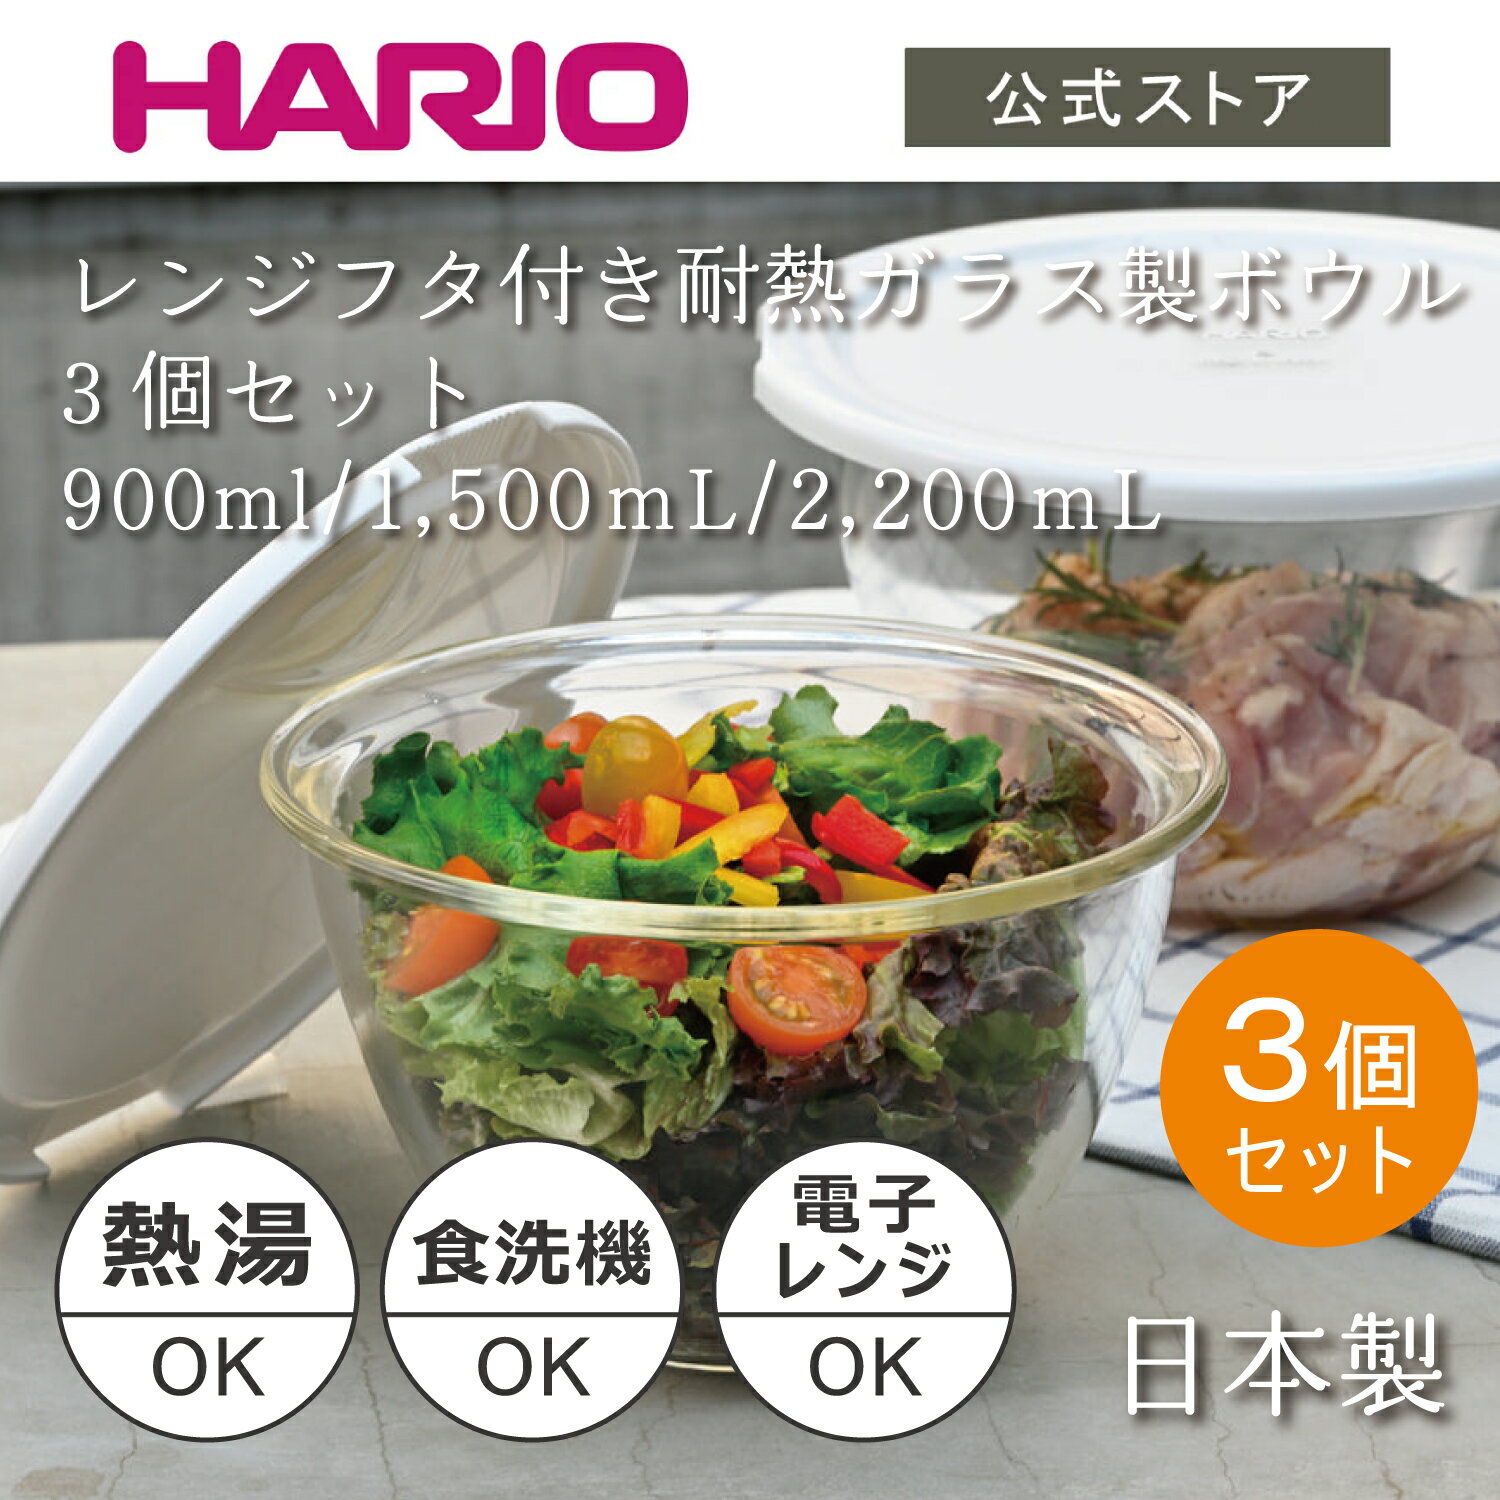 HARIO レンジフタ付き耐熱ガラス製ボウル3個セット　HARIO ハリオ 食洗機対応 耐熱ガラス ボウル パーツ 調理 製菓 フタ 水切り